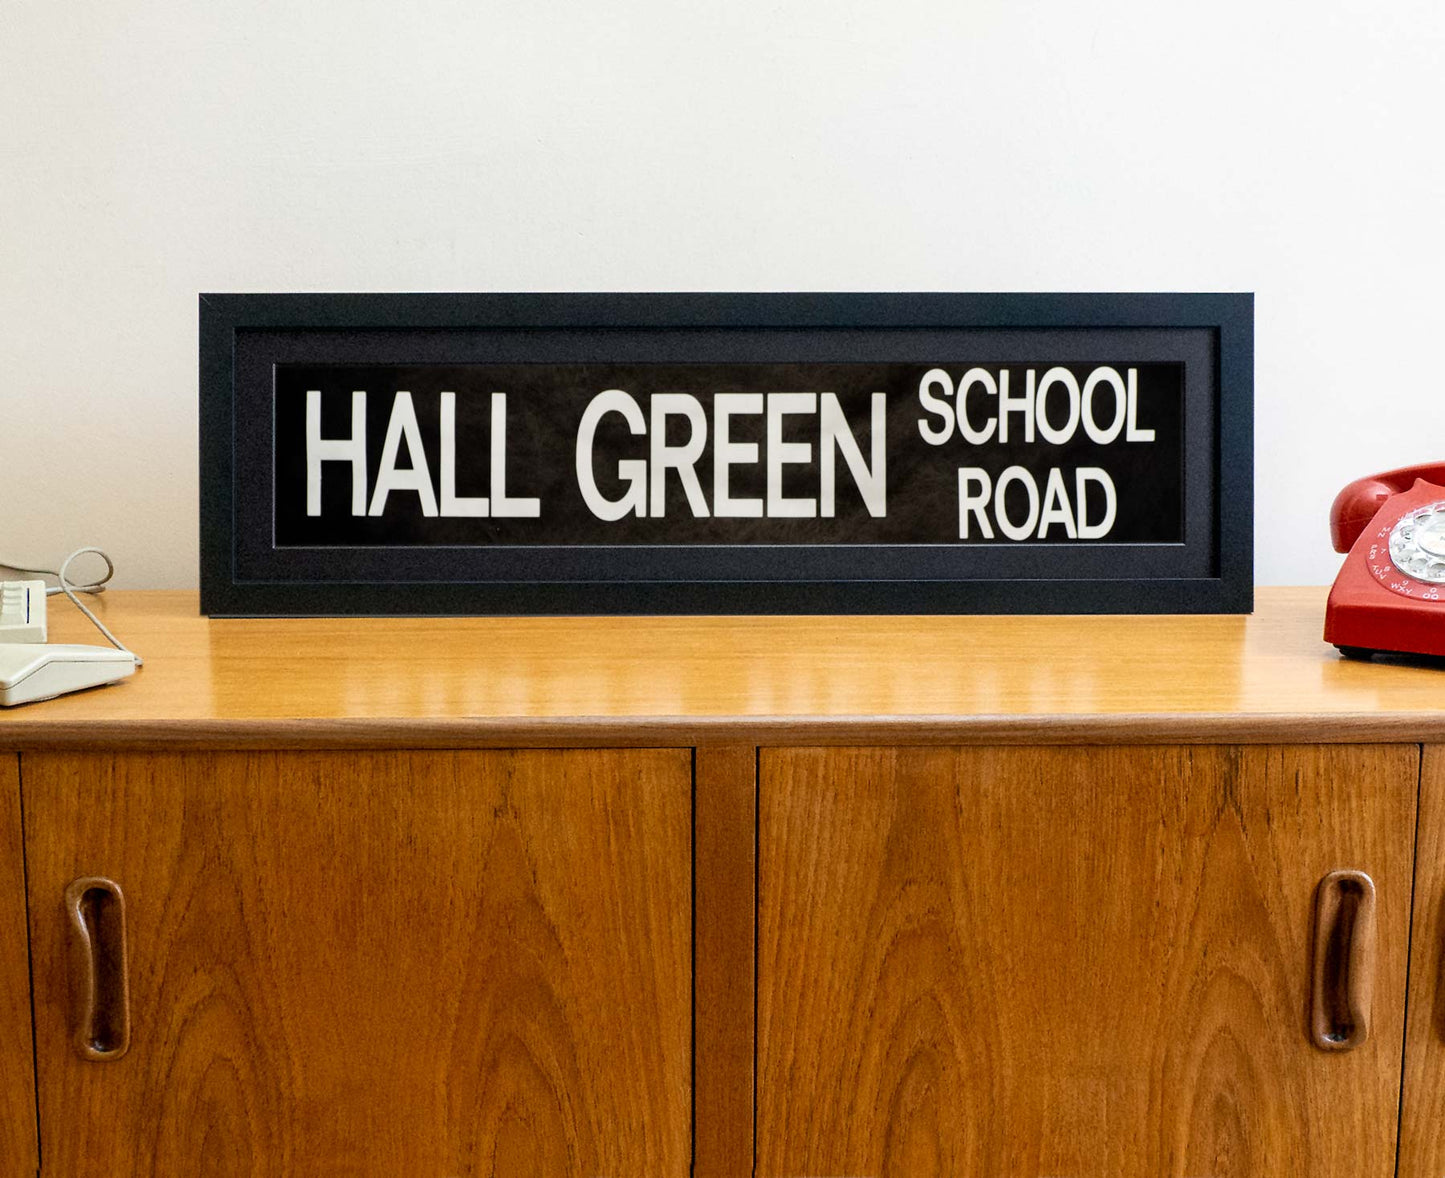 Hall Green School Road 1990s framed original bus blind